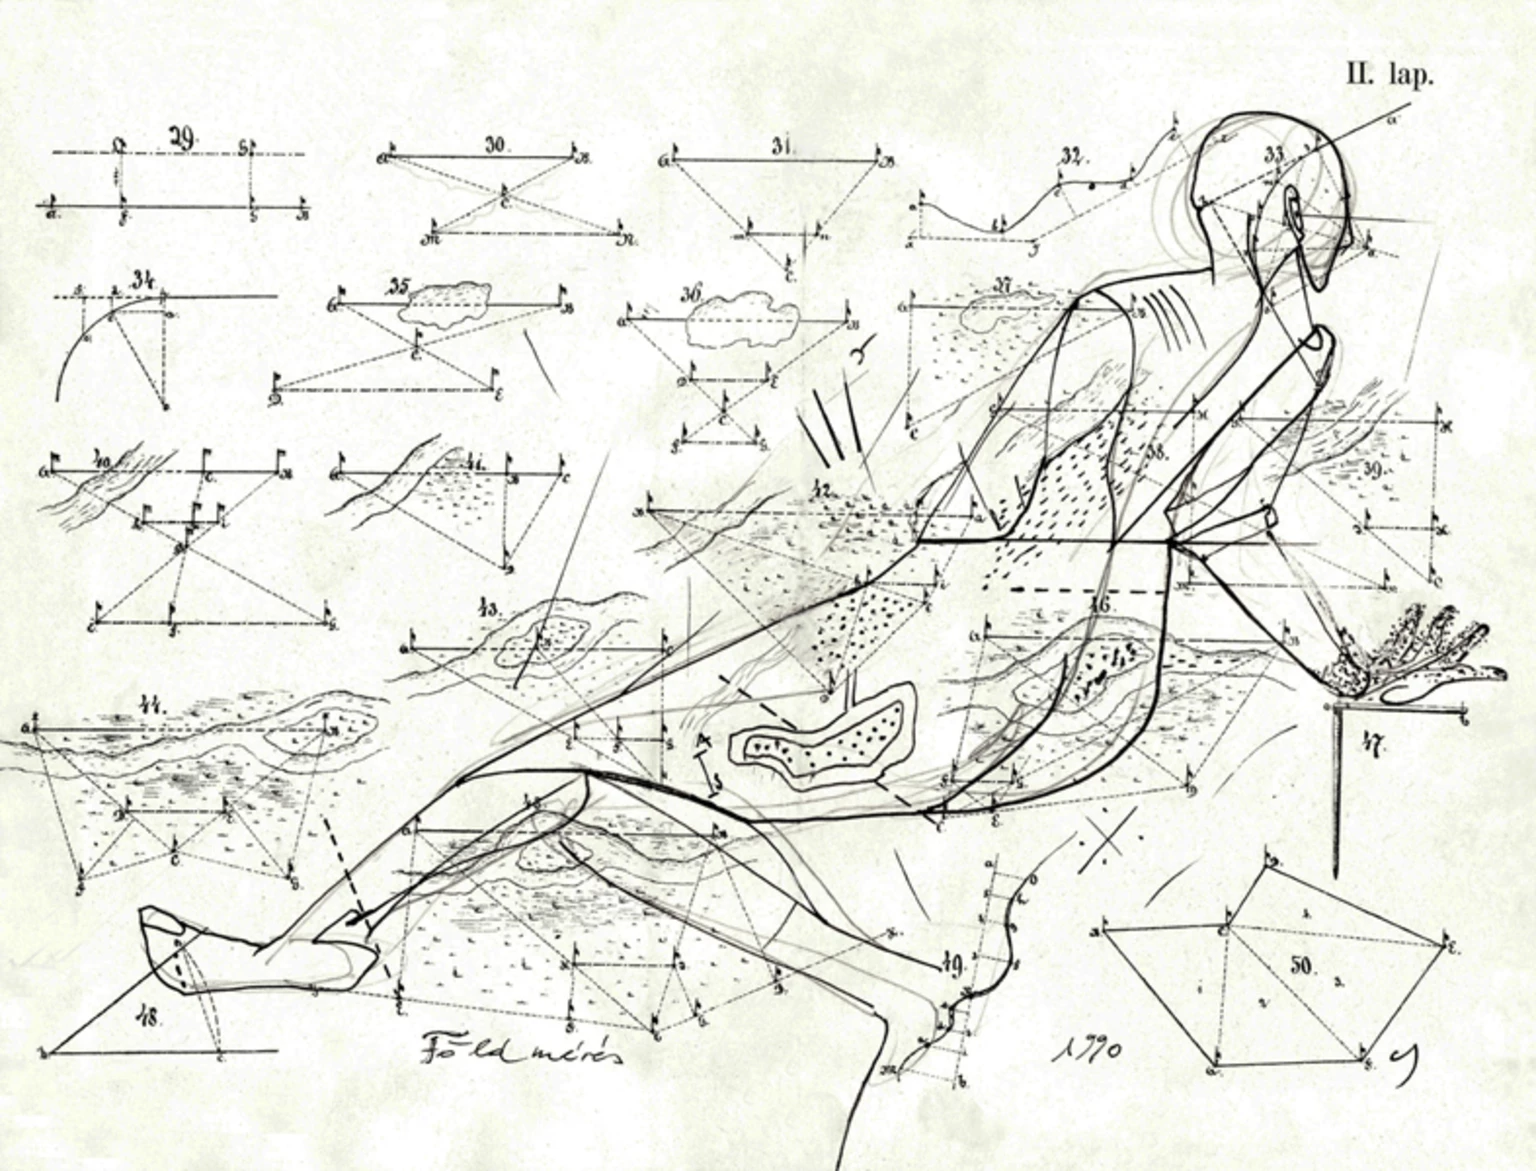 Survey I., 1990 - paper, clack ink, 21 x 27,4 cm